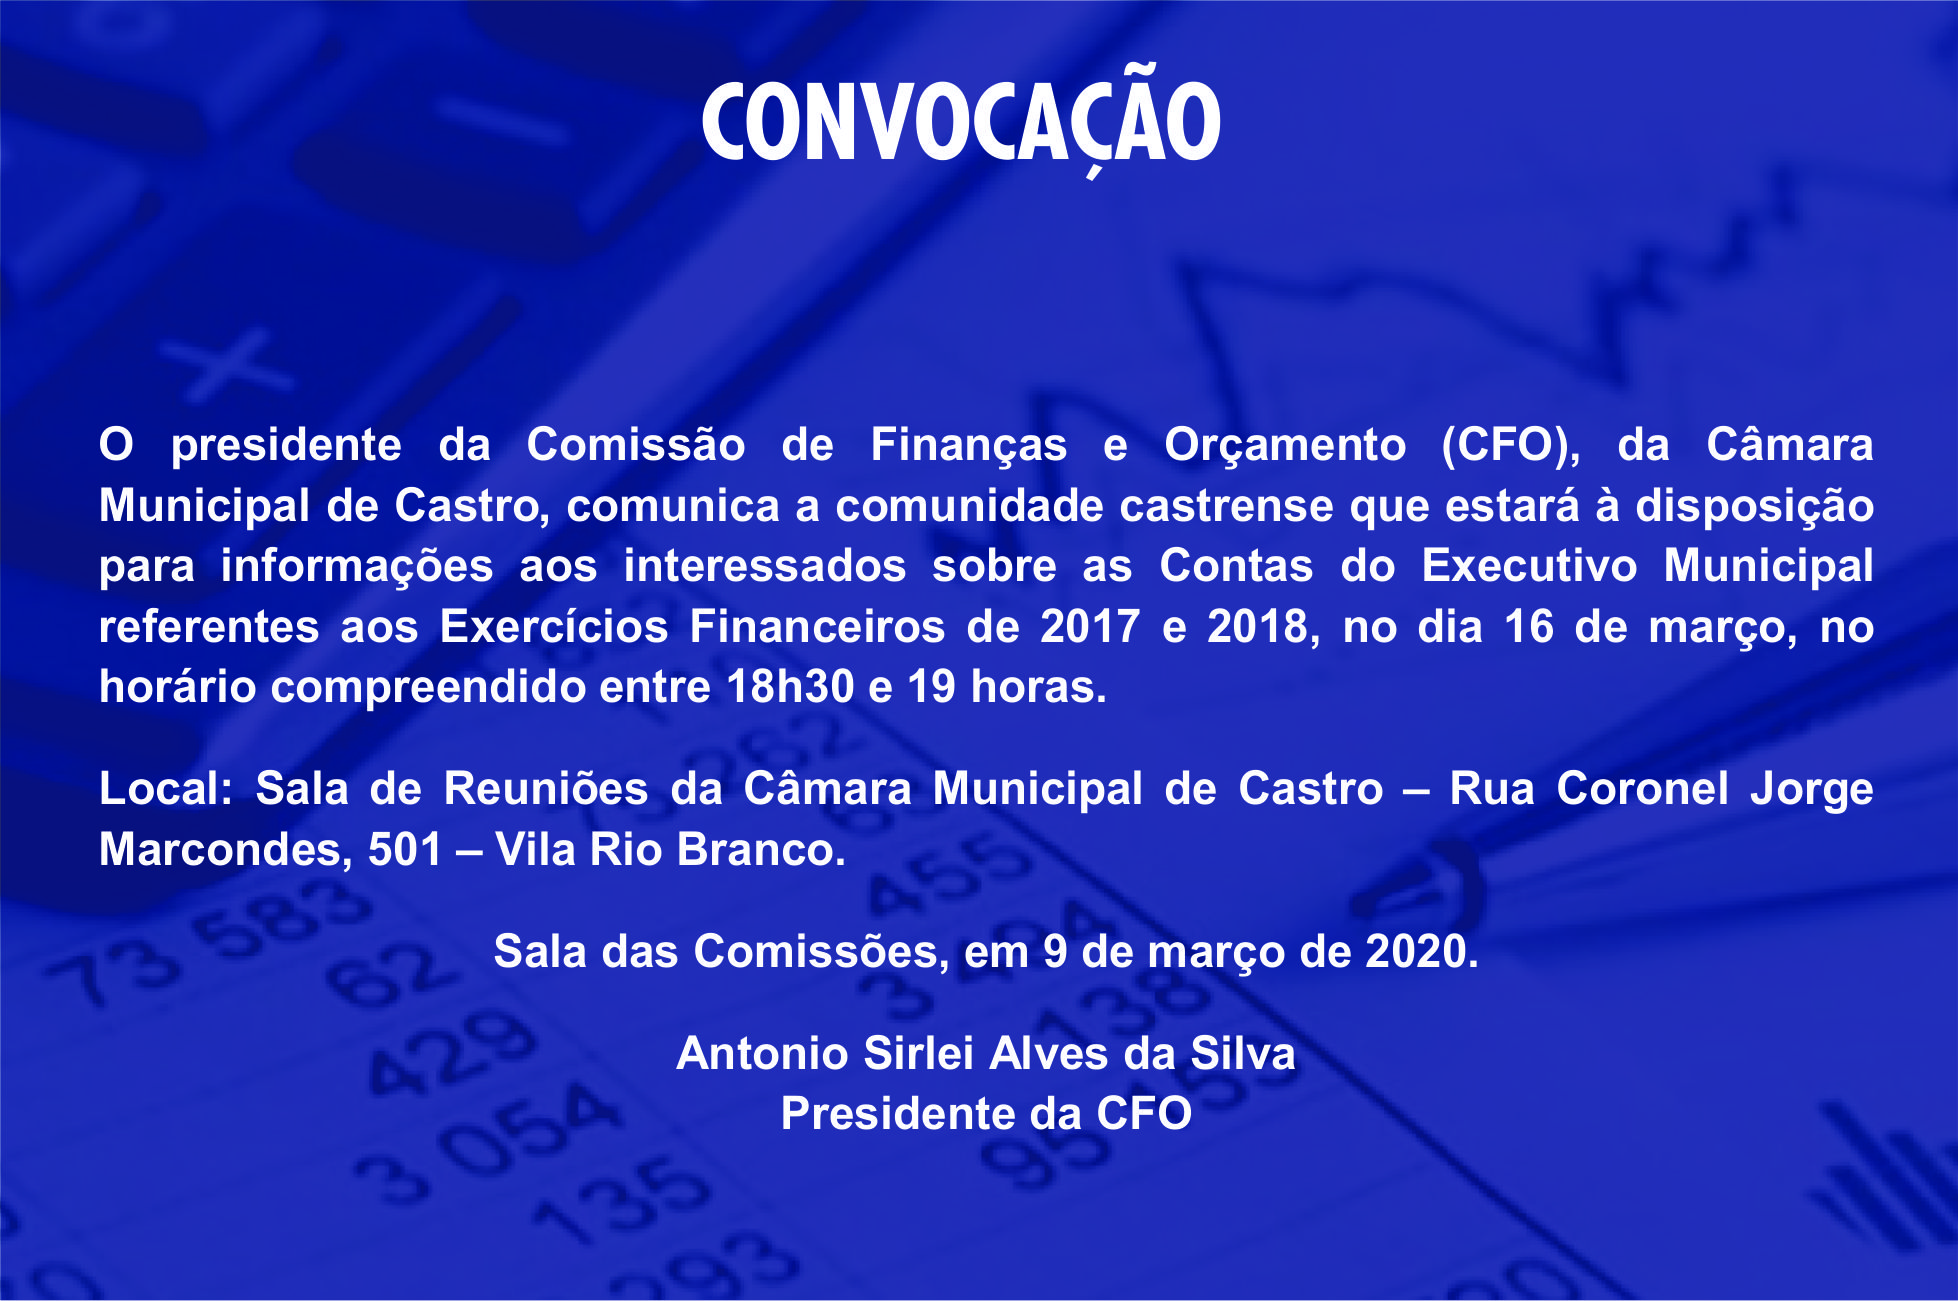 CONVOCAÇÃO PARA REUNIÃO DA COMISSÃO DE FINANÇAS E ORÇAMENTO (CFO)